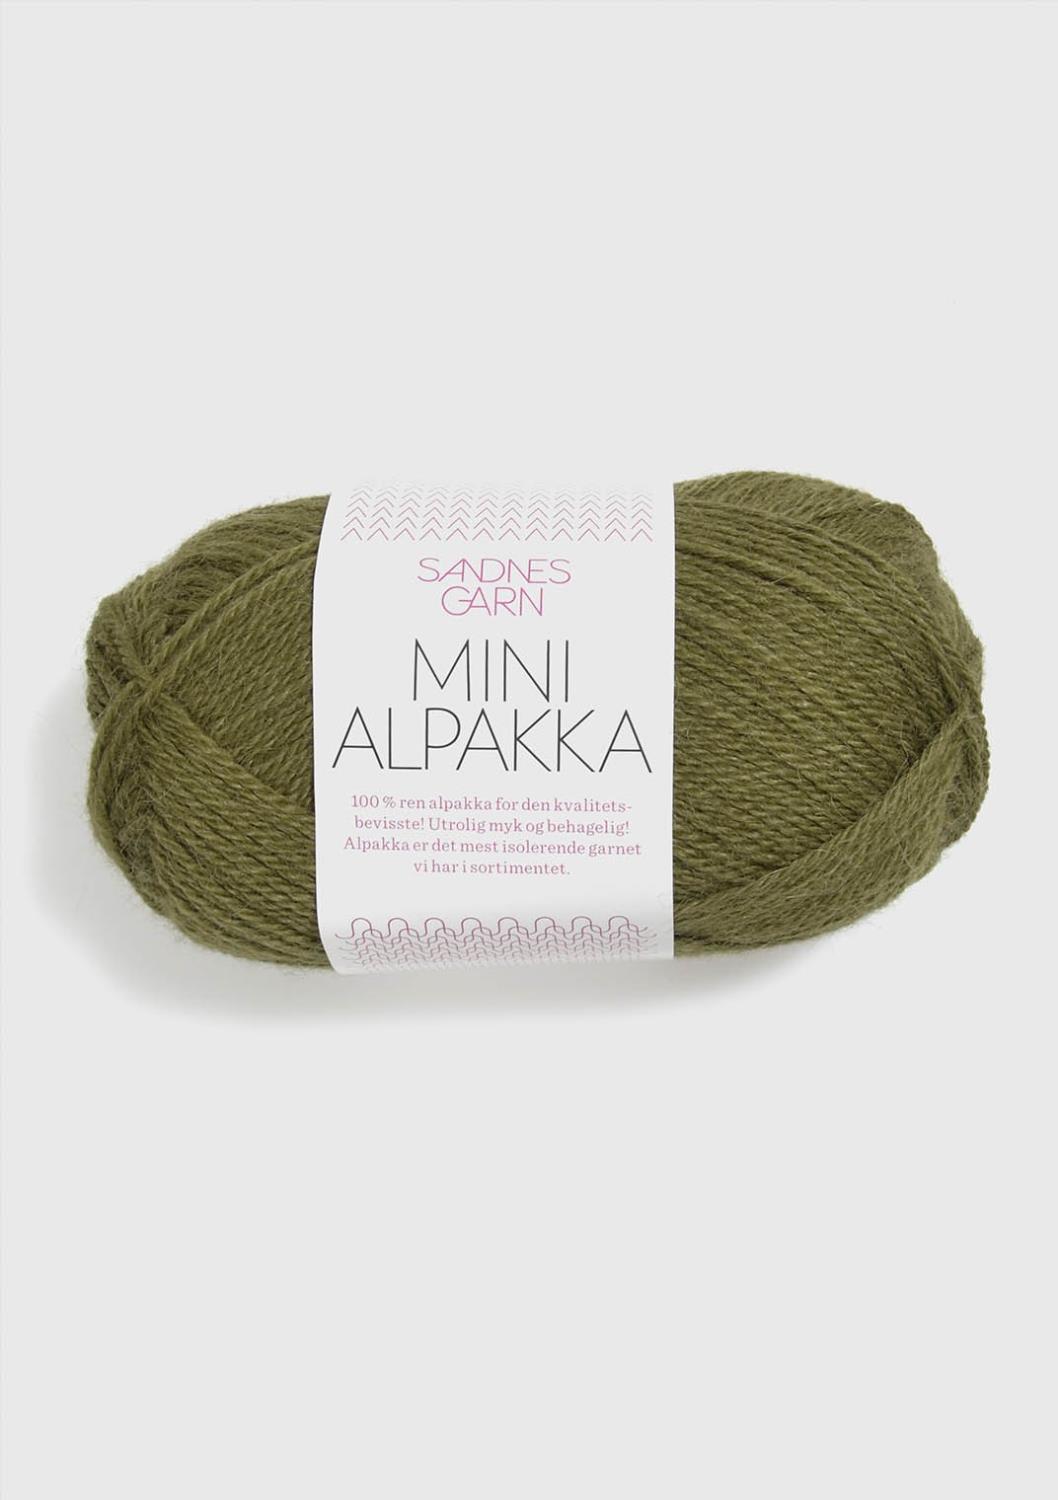 Mini Alpakka Sandnes 9554 - Olivengrønn